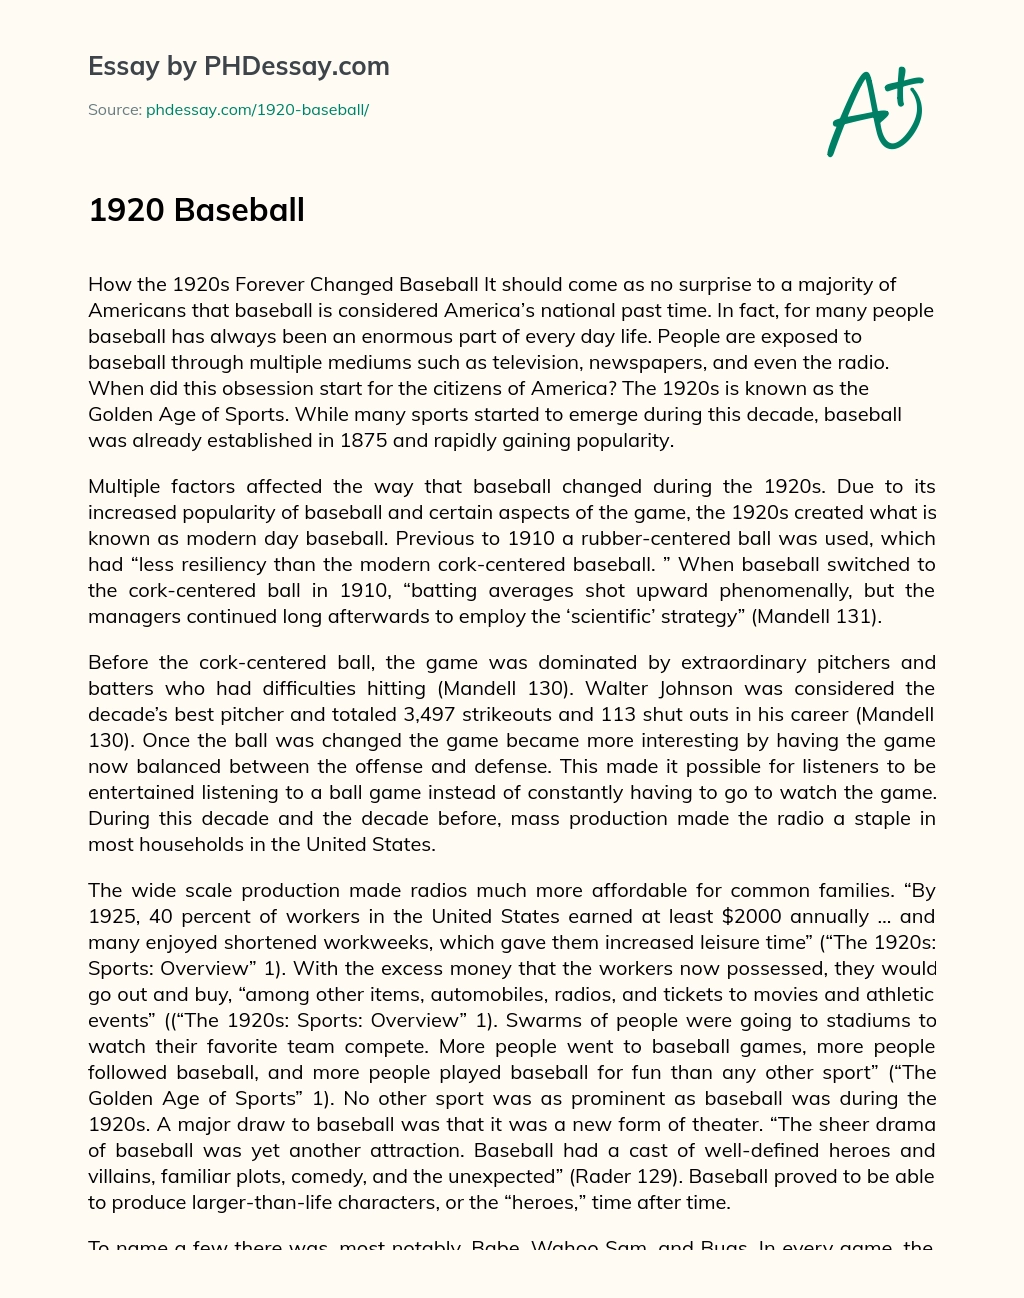 1920 Baseball essay